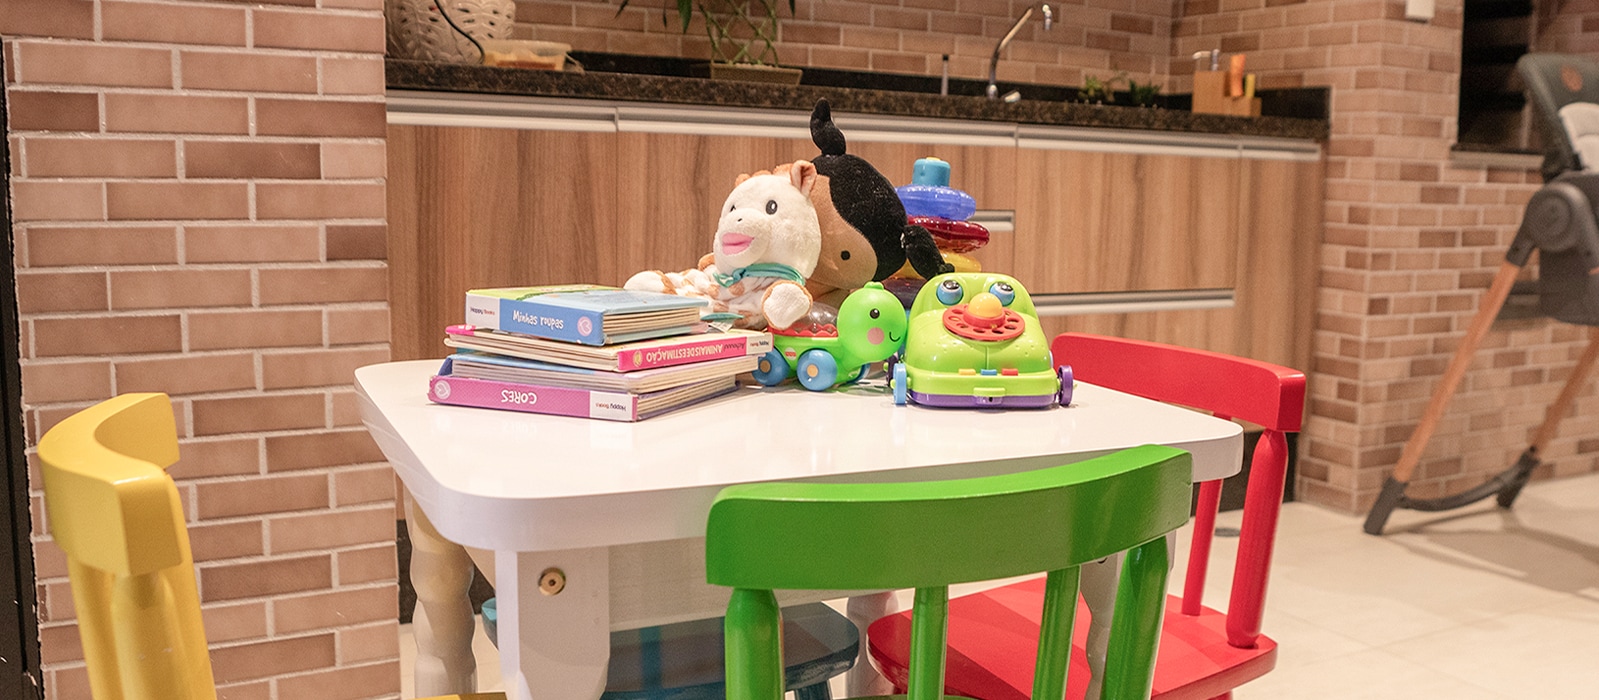 Una imagen de mesa blanca y sillas coloridas con amarillo, verde, rojo. En la mesa hay muñecas, libros y algunos juguetes para los niños.